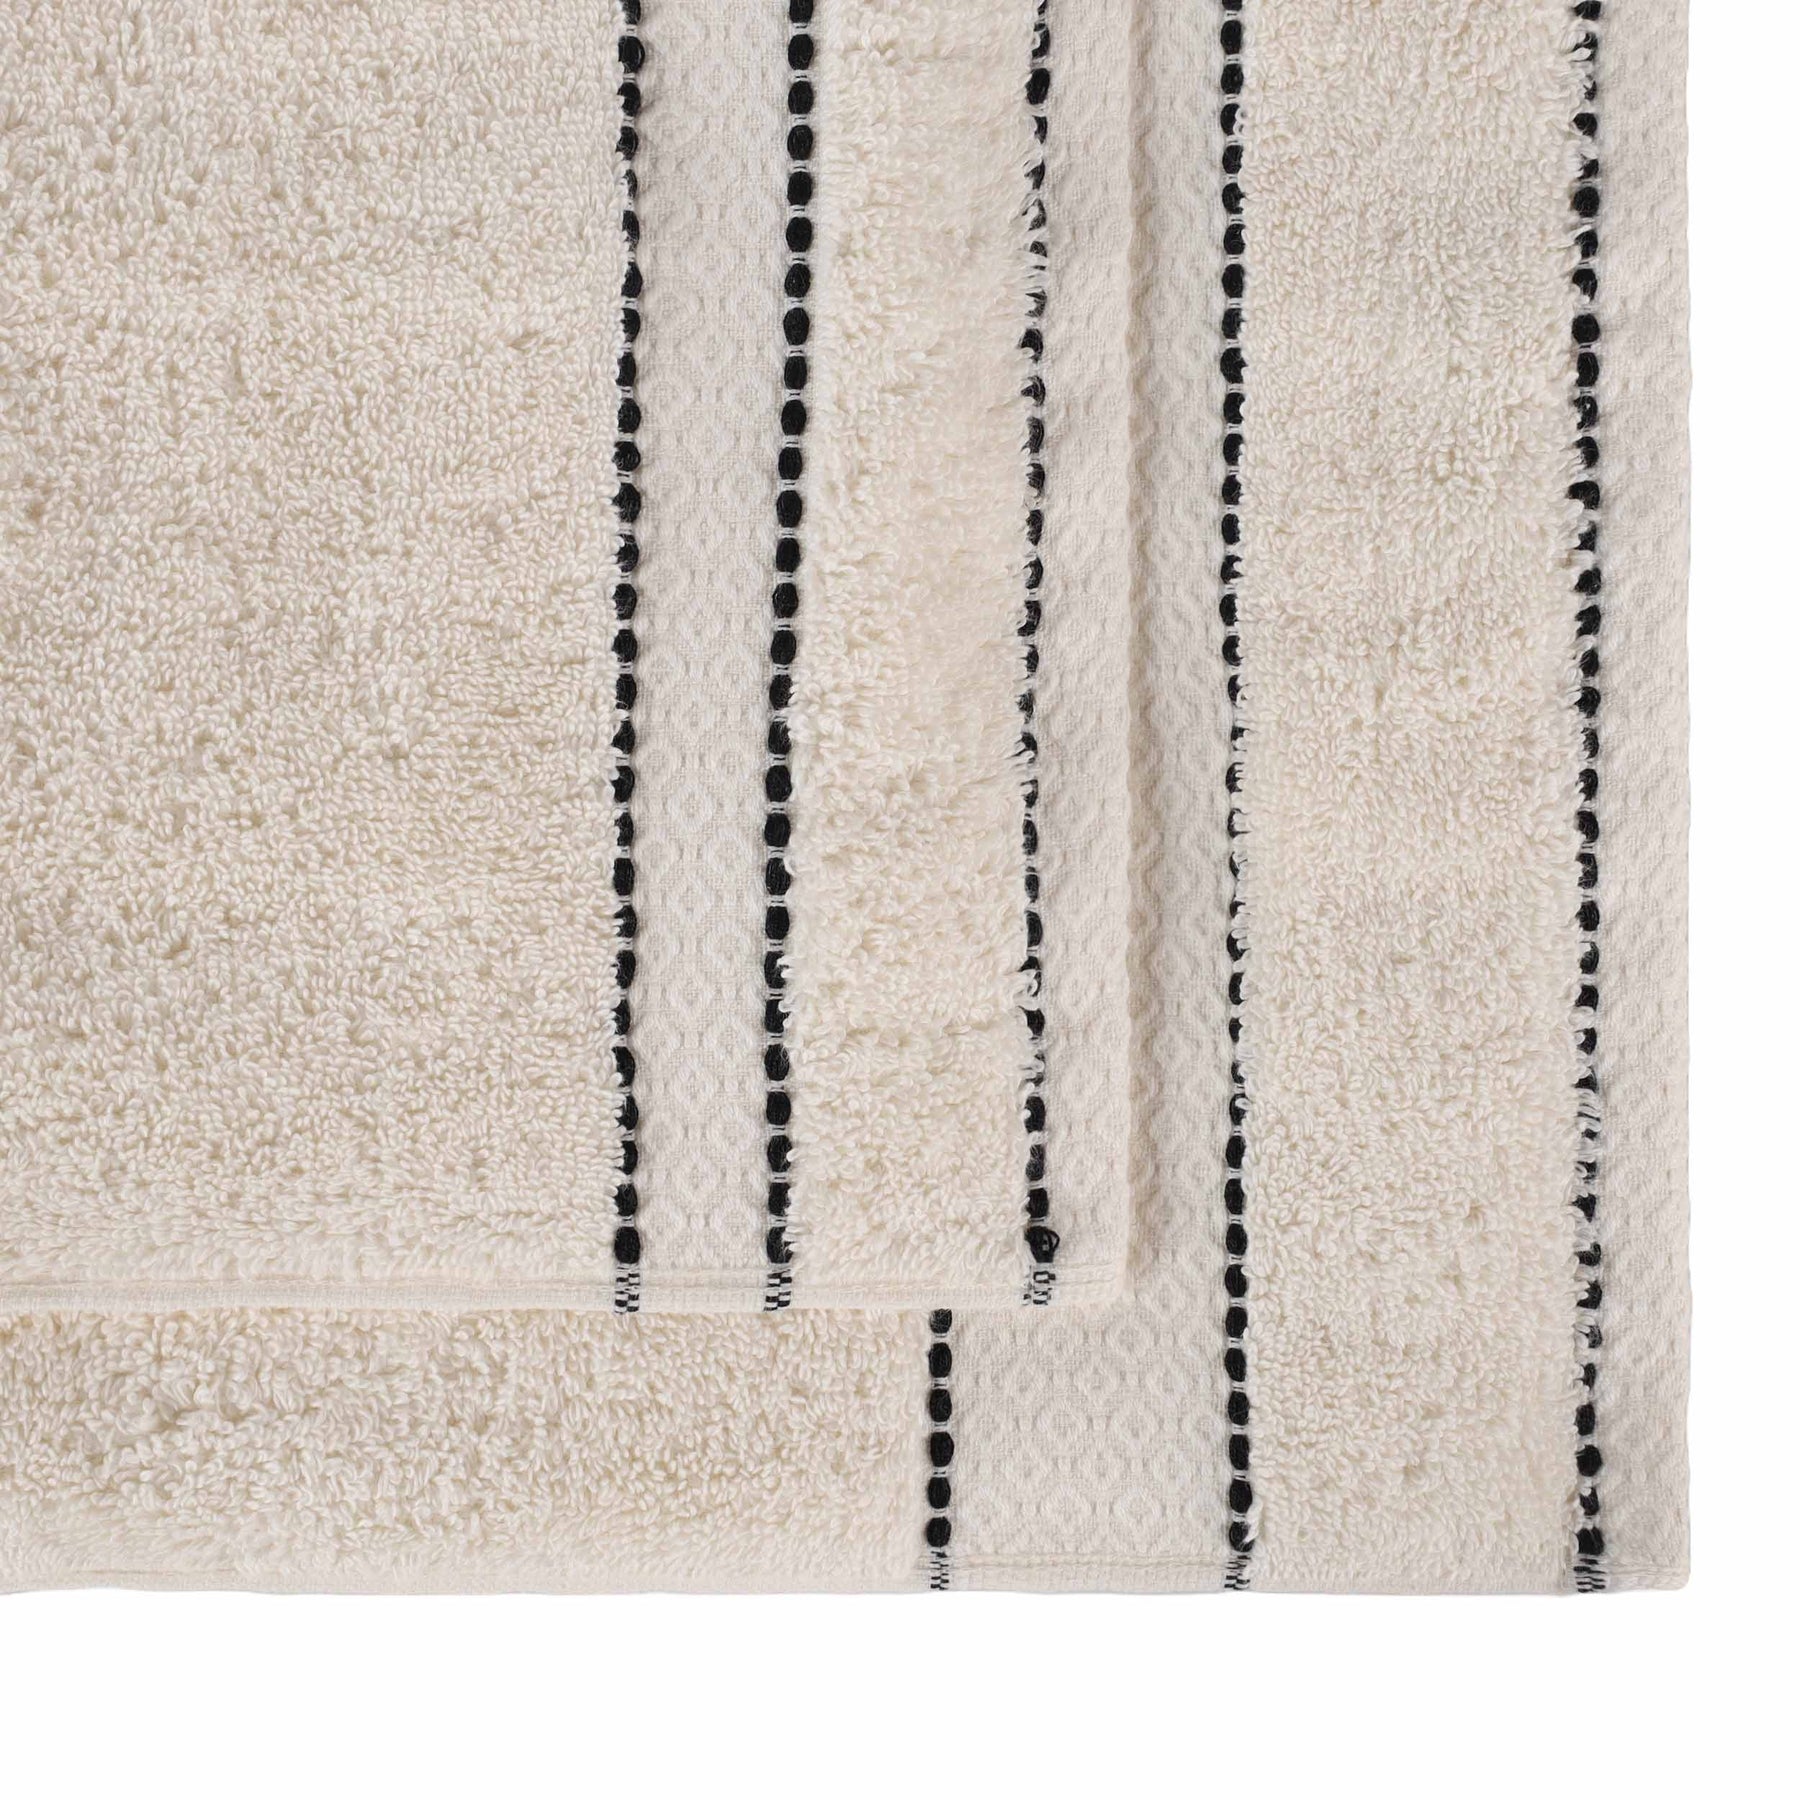 Niles Egyptian Giza Cotton Dobby Plush Face Towel Washcloth - Ivory